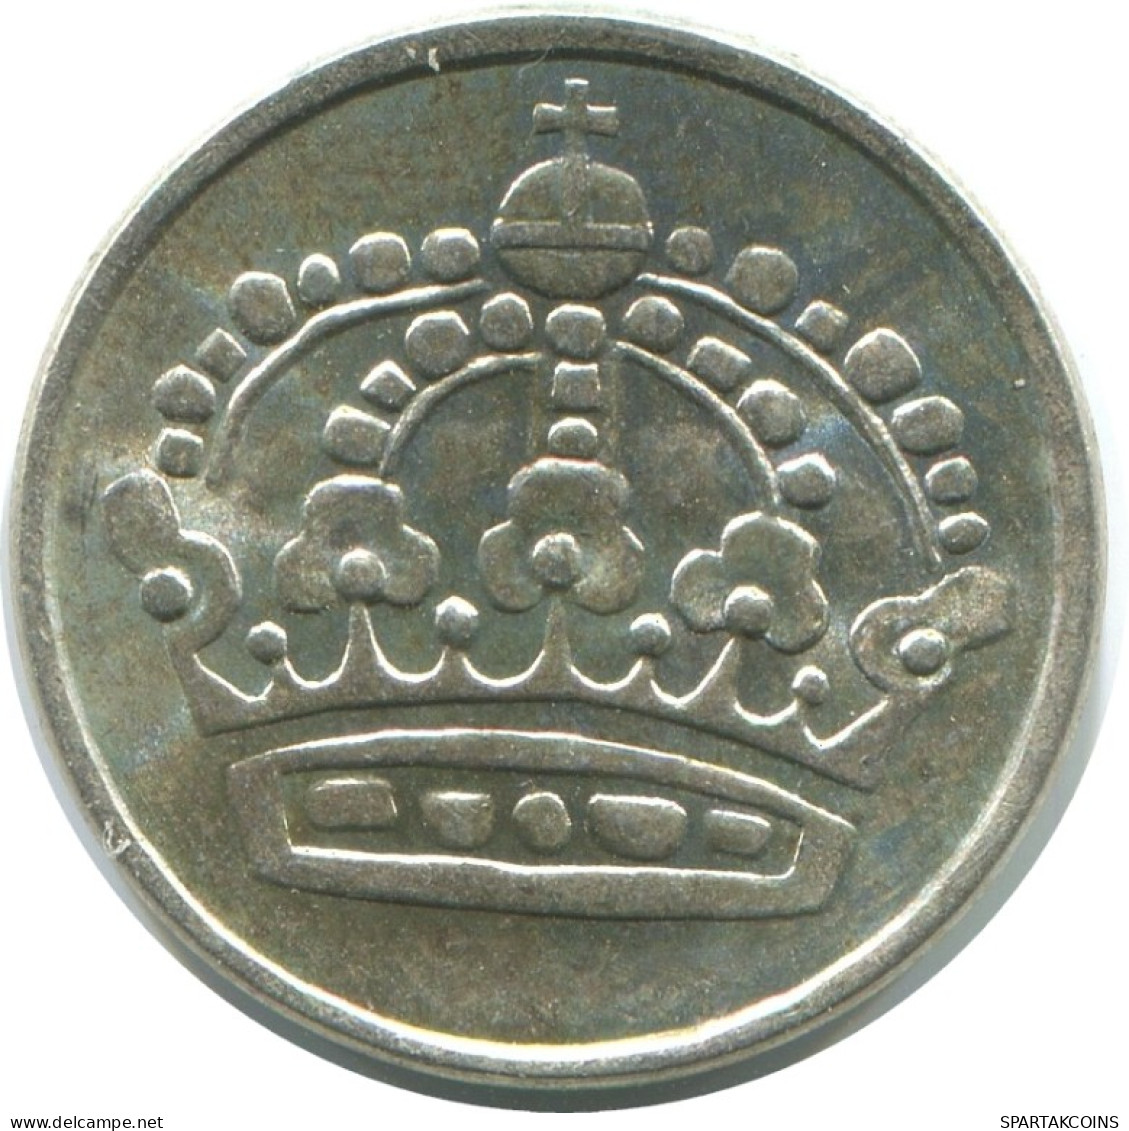 25 ORE 1959 SWEDEN SILVER Coin #AC521.2.U.A - Suède